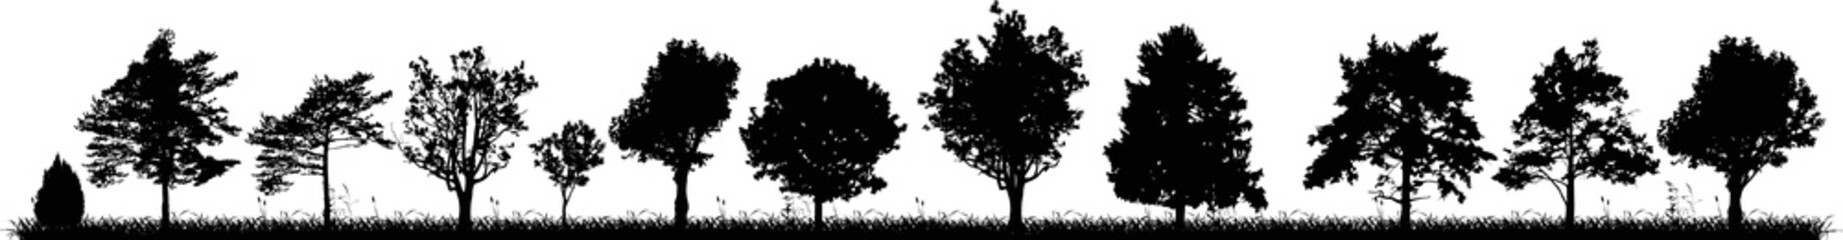 twelve black trees silhouettes strip on white